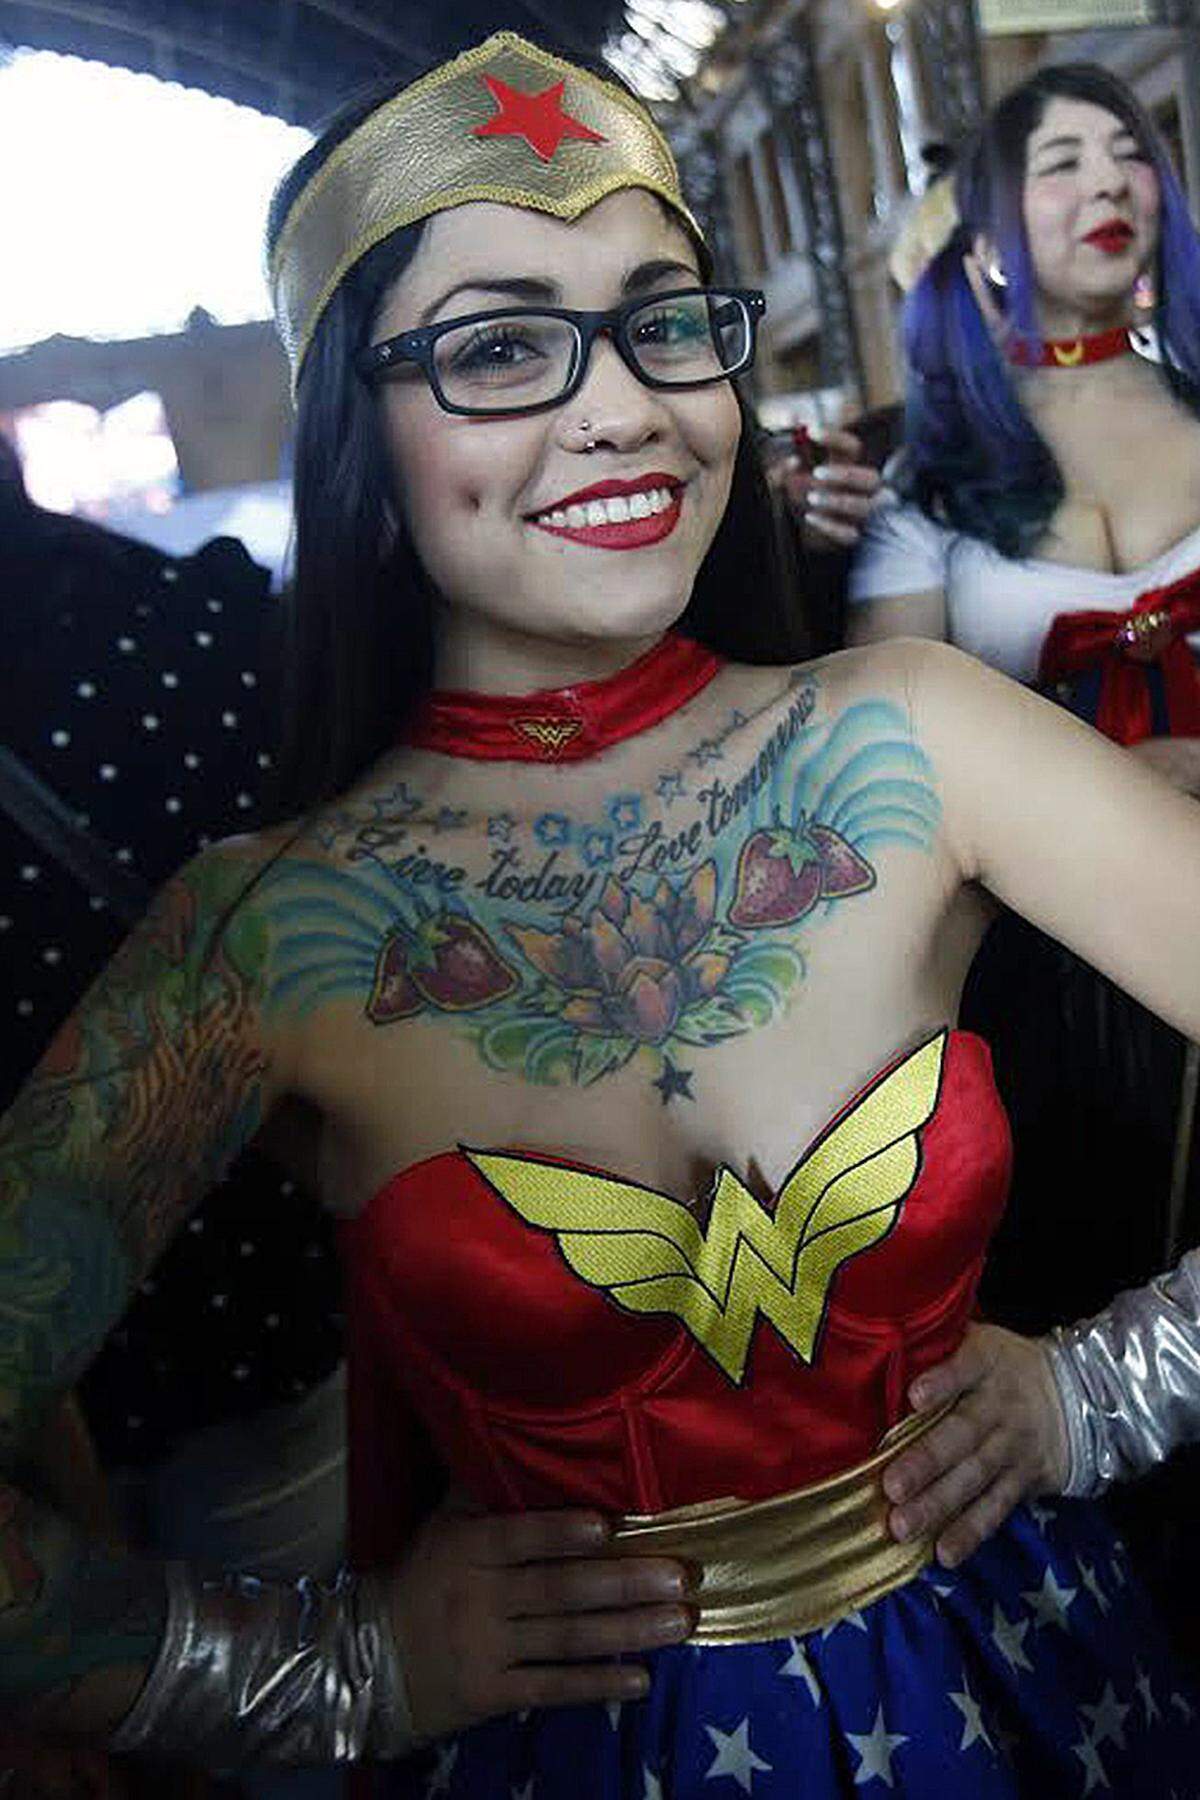 Es hat - zumindest auf den ersten Blick gesehen - ganz den Anschein, dass in Hollywood langsam das Zeitalter der Superheldinnen anbricht. Anfang August gab Sony bekannt, einen Spider-Man-Ableger mit einer weiblichen Superheldin zu veröffentlichen. Der Film soll 2017 in den Kinos anlaufen.Im Bild: Eine als Wonder Woman verkleidete Besucherin der Comic Con 2014 in Chile.